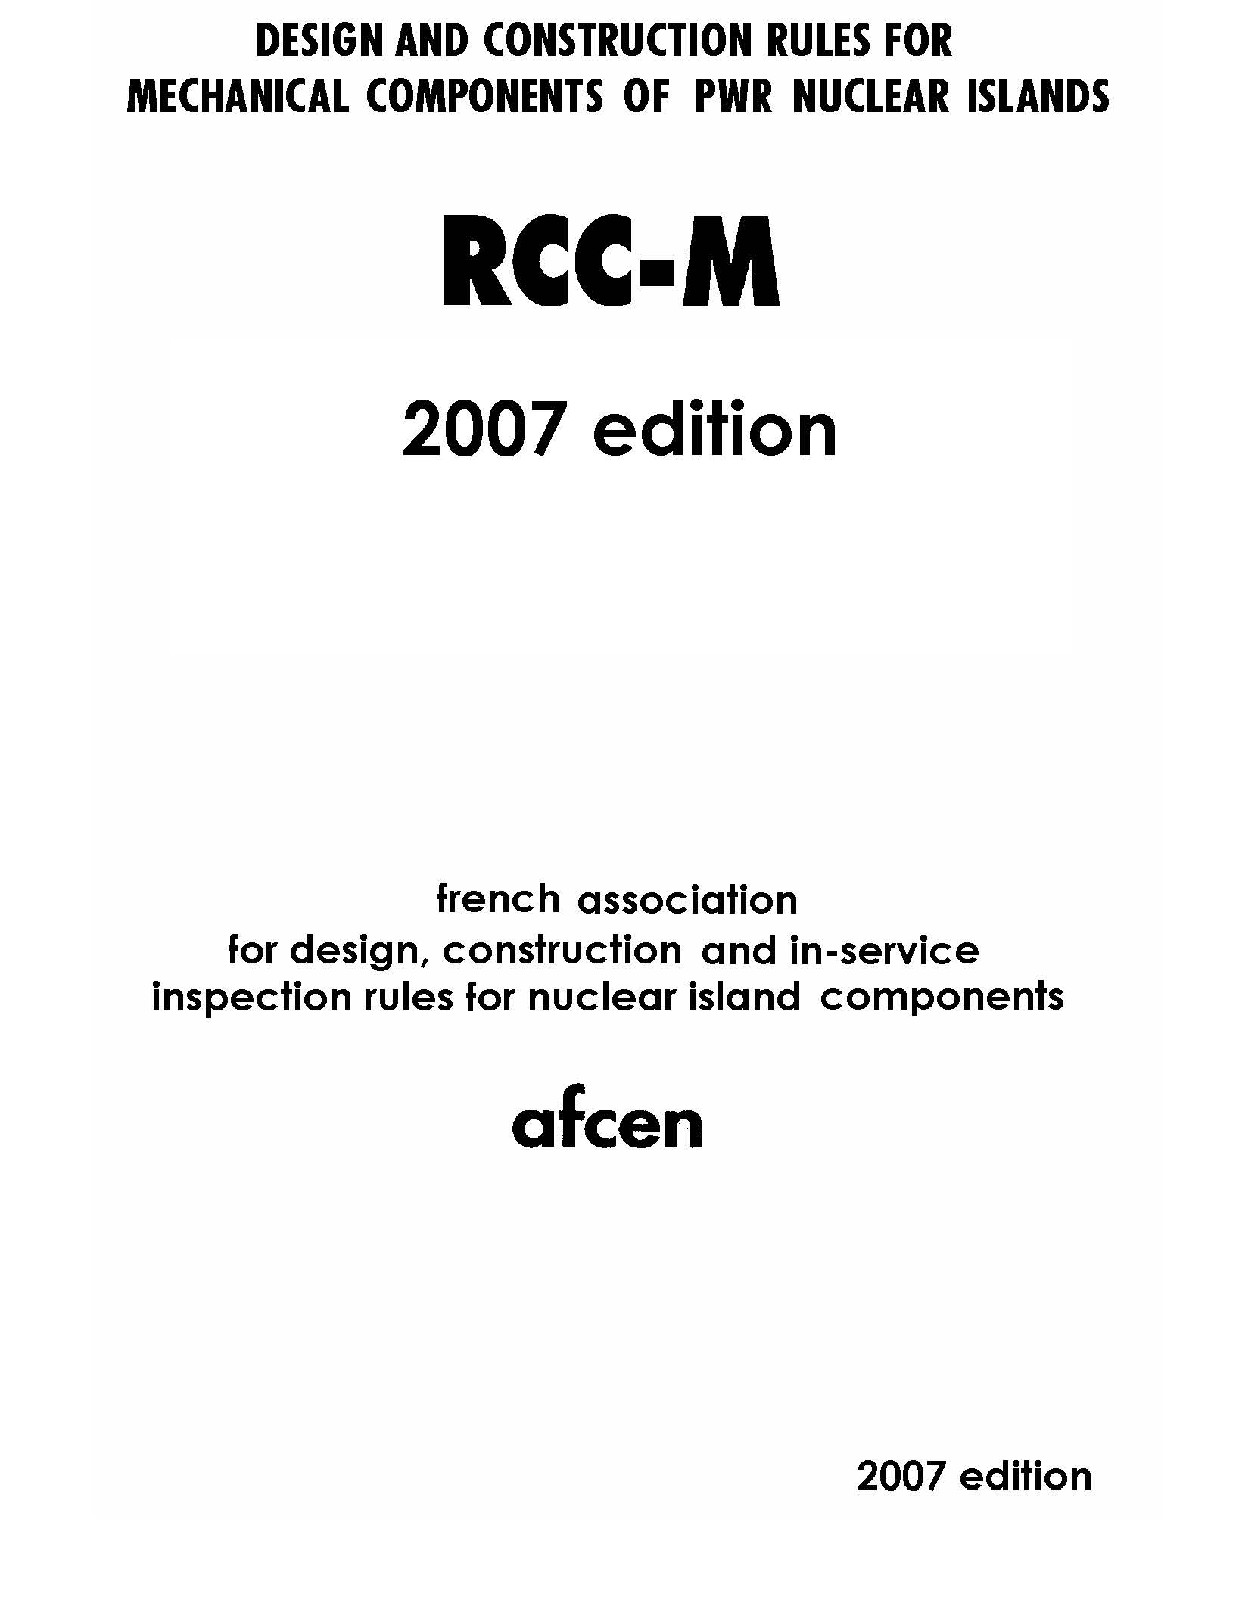 RCC-M